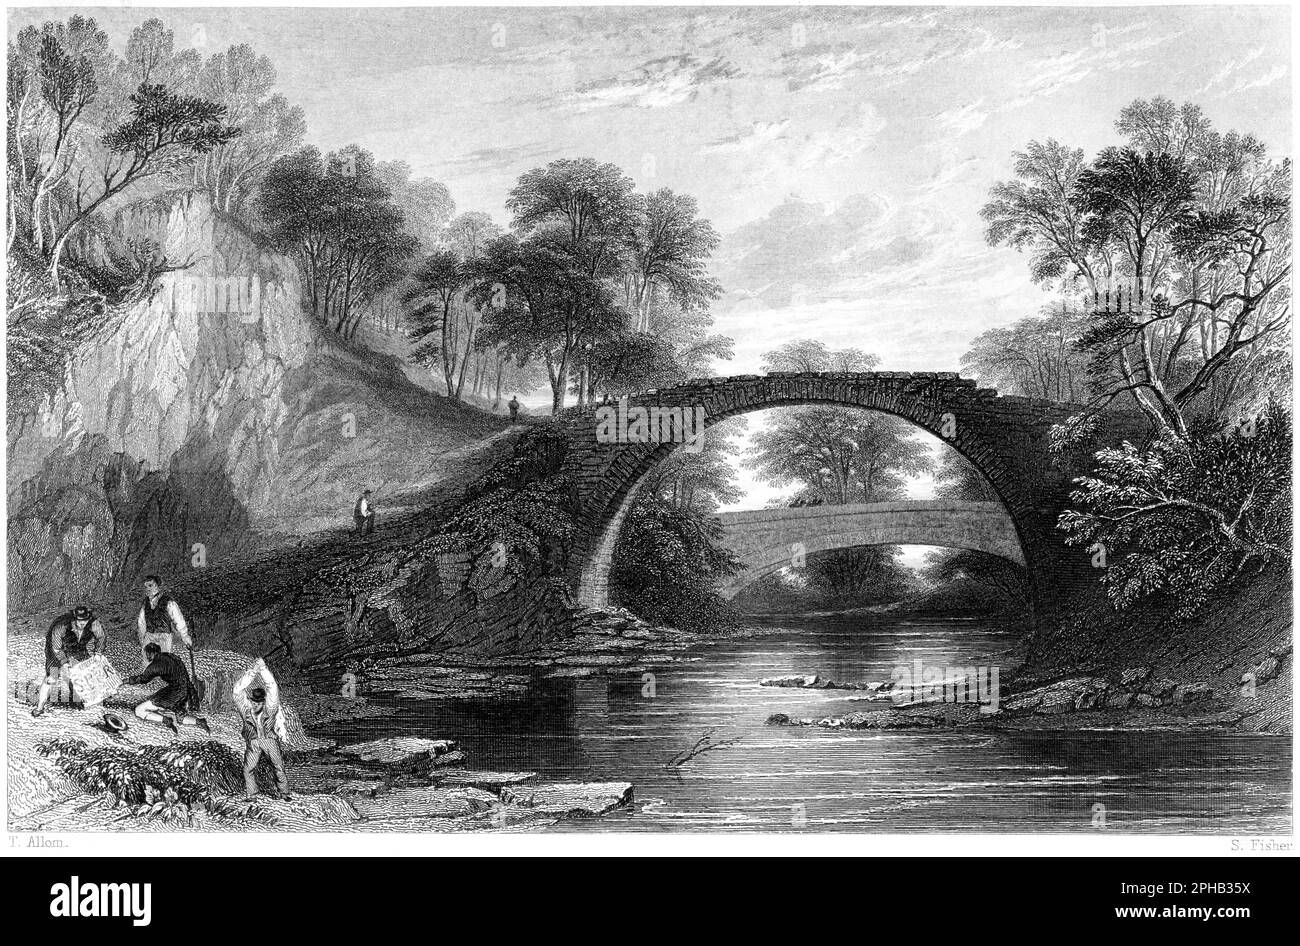 Une gravure du pont romain au-dessus de l'eau de Moose (Mouse), Lanark, Écosse UK a scanné à haute résolution d'un livre imprimé en 1840. Banque D'Images